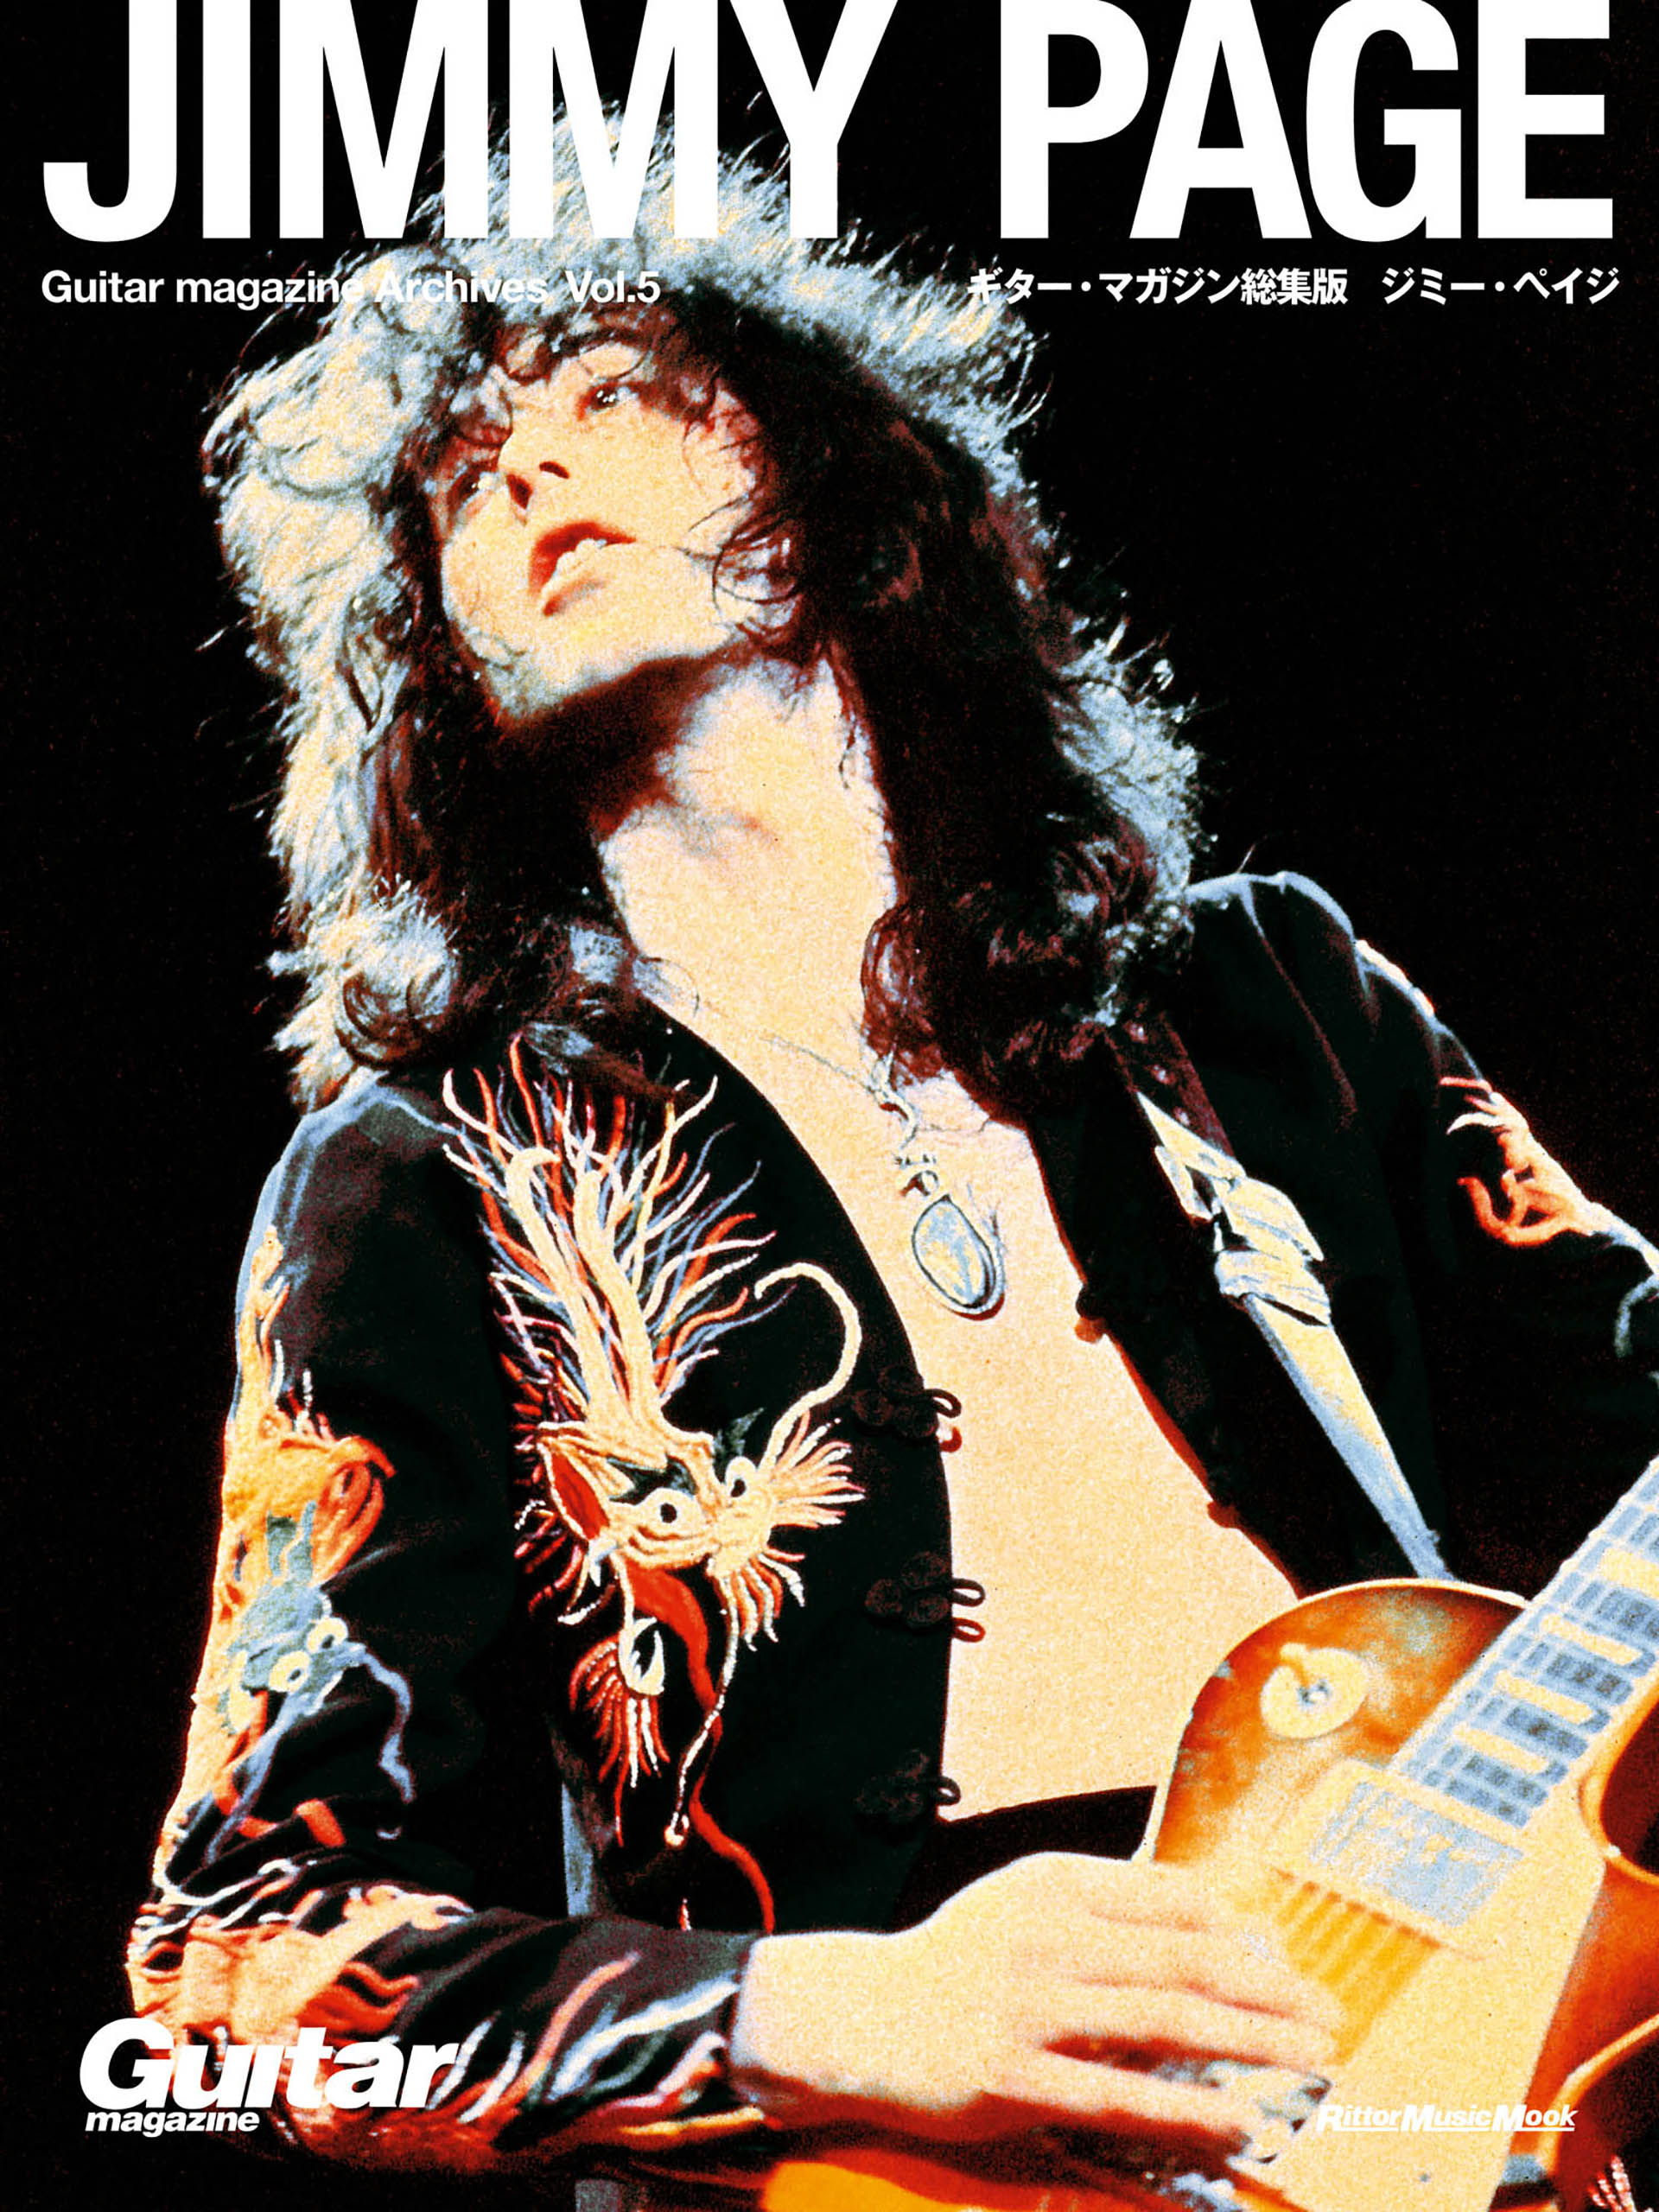 Guitar magazine Archives Vol.5 ジミー・ペイジ - ギター